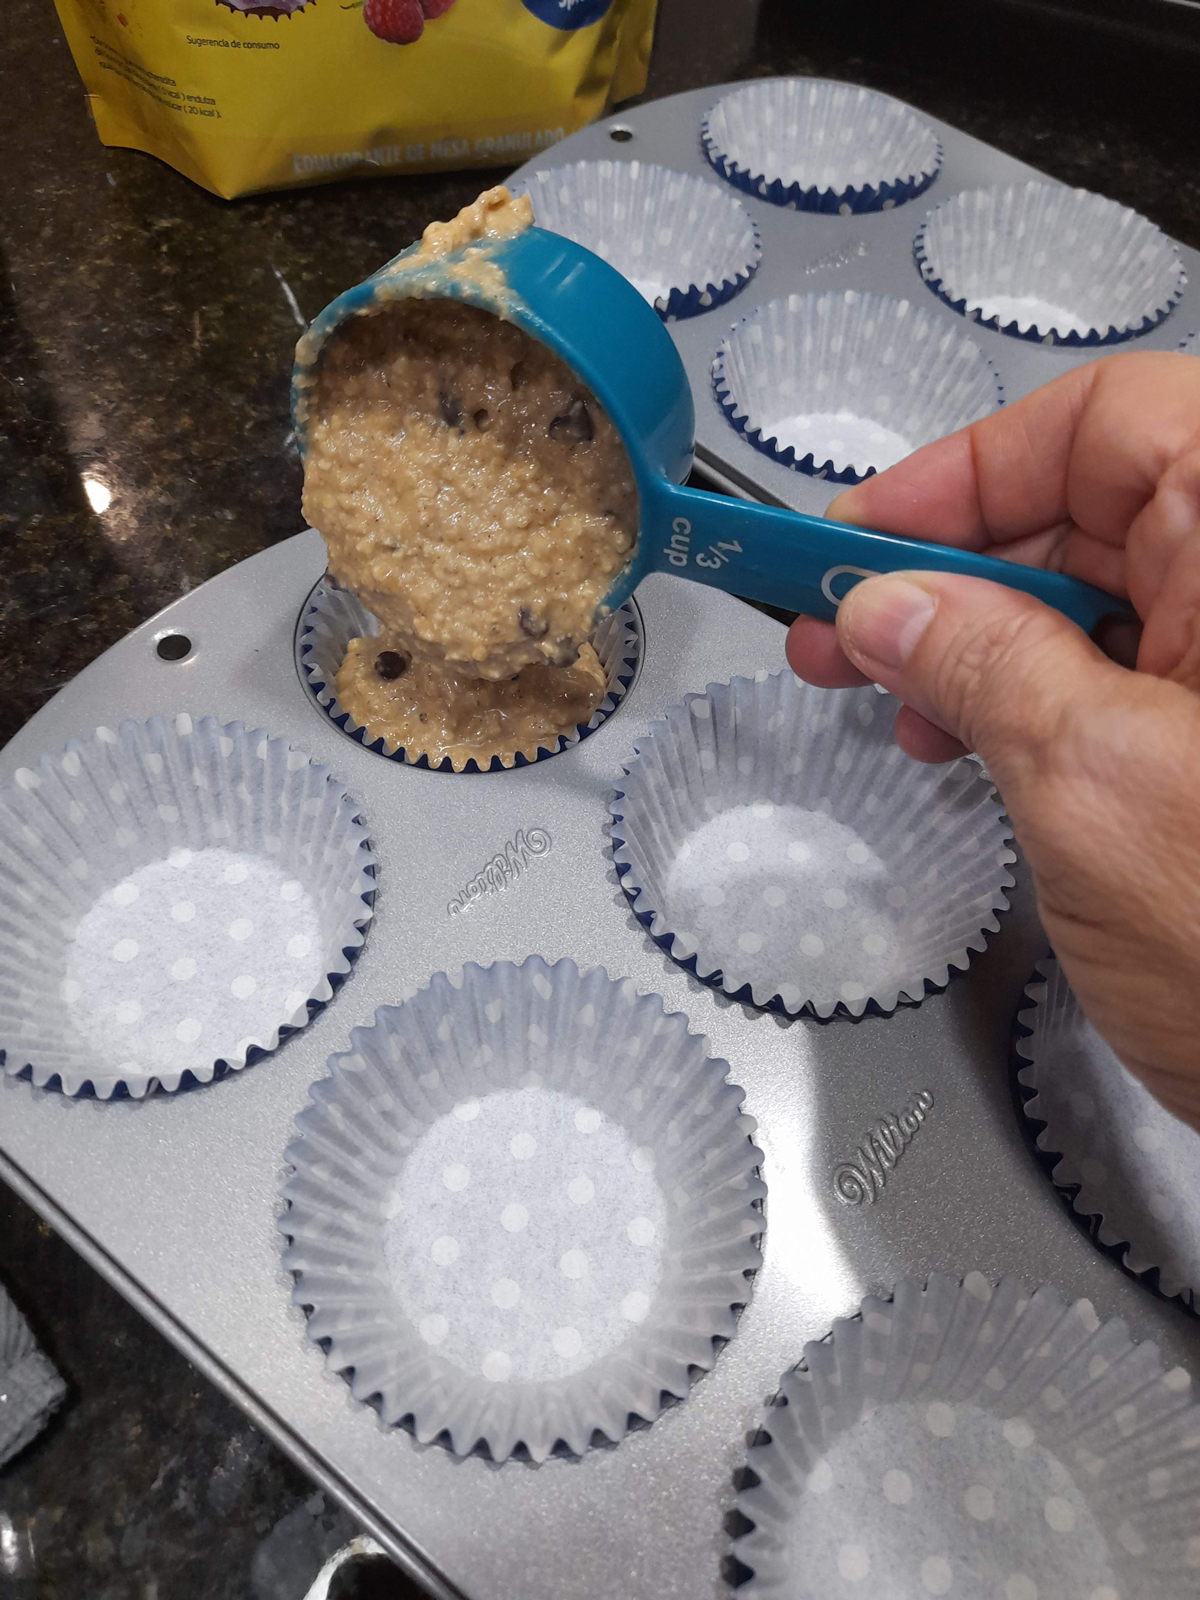 LLenando capacillos con mezcla de muffins